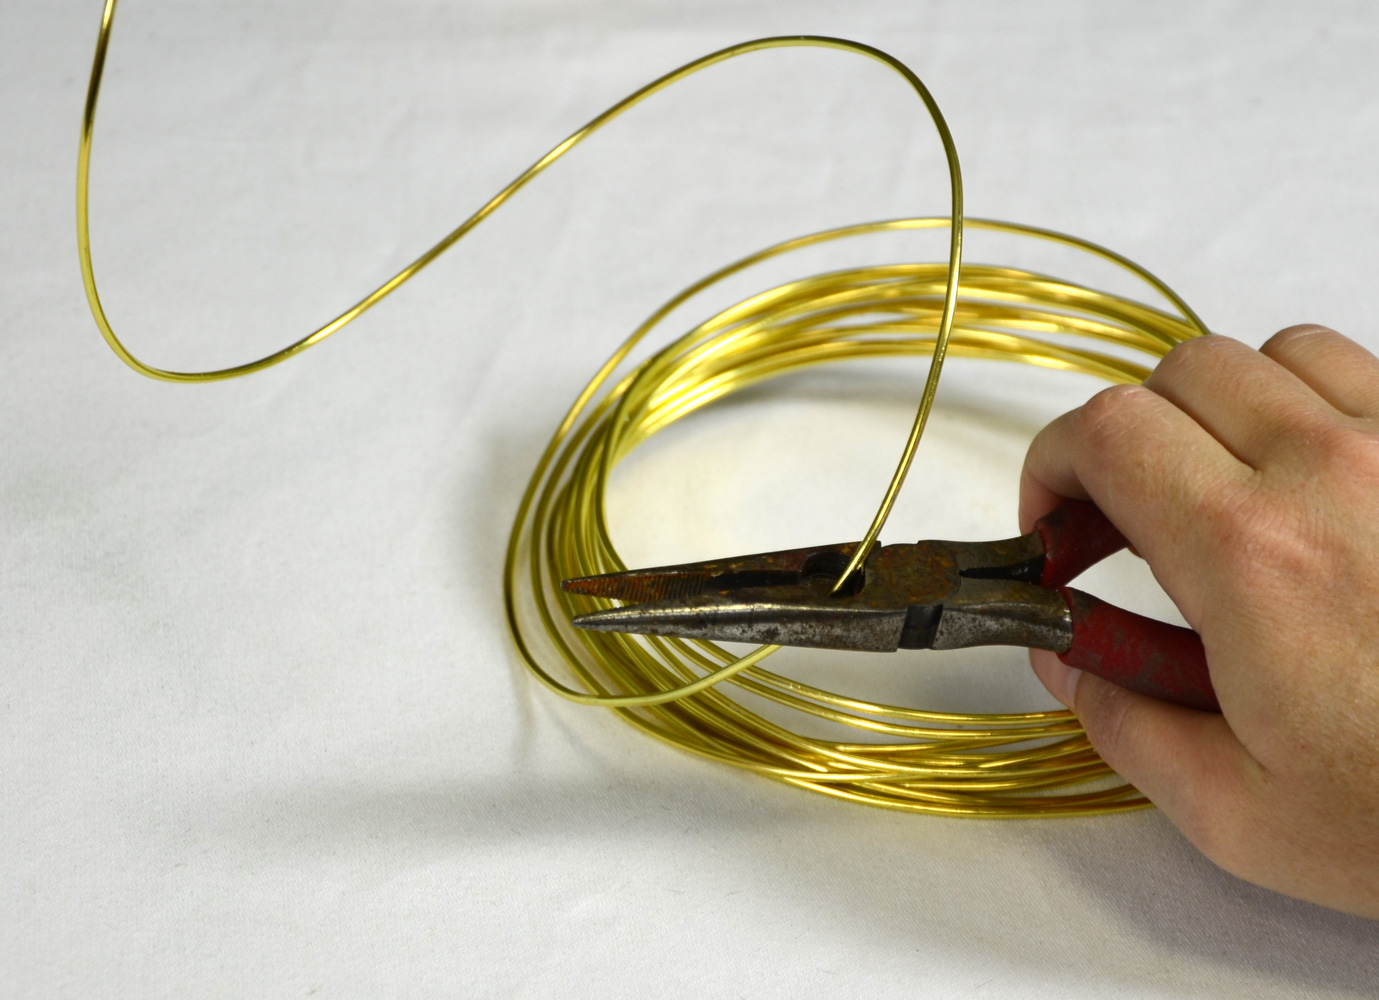  Gold craft wire curls